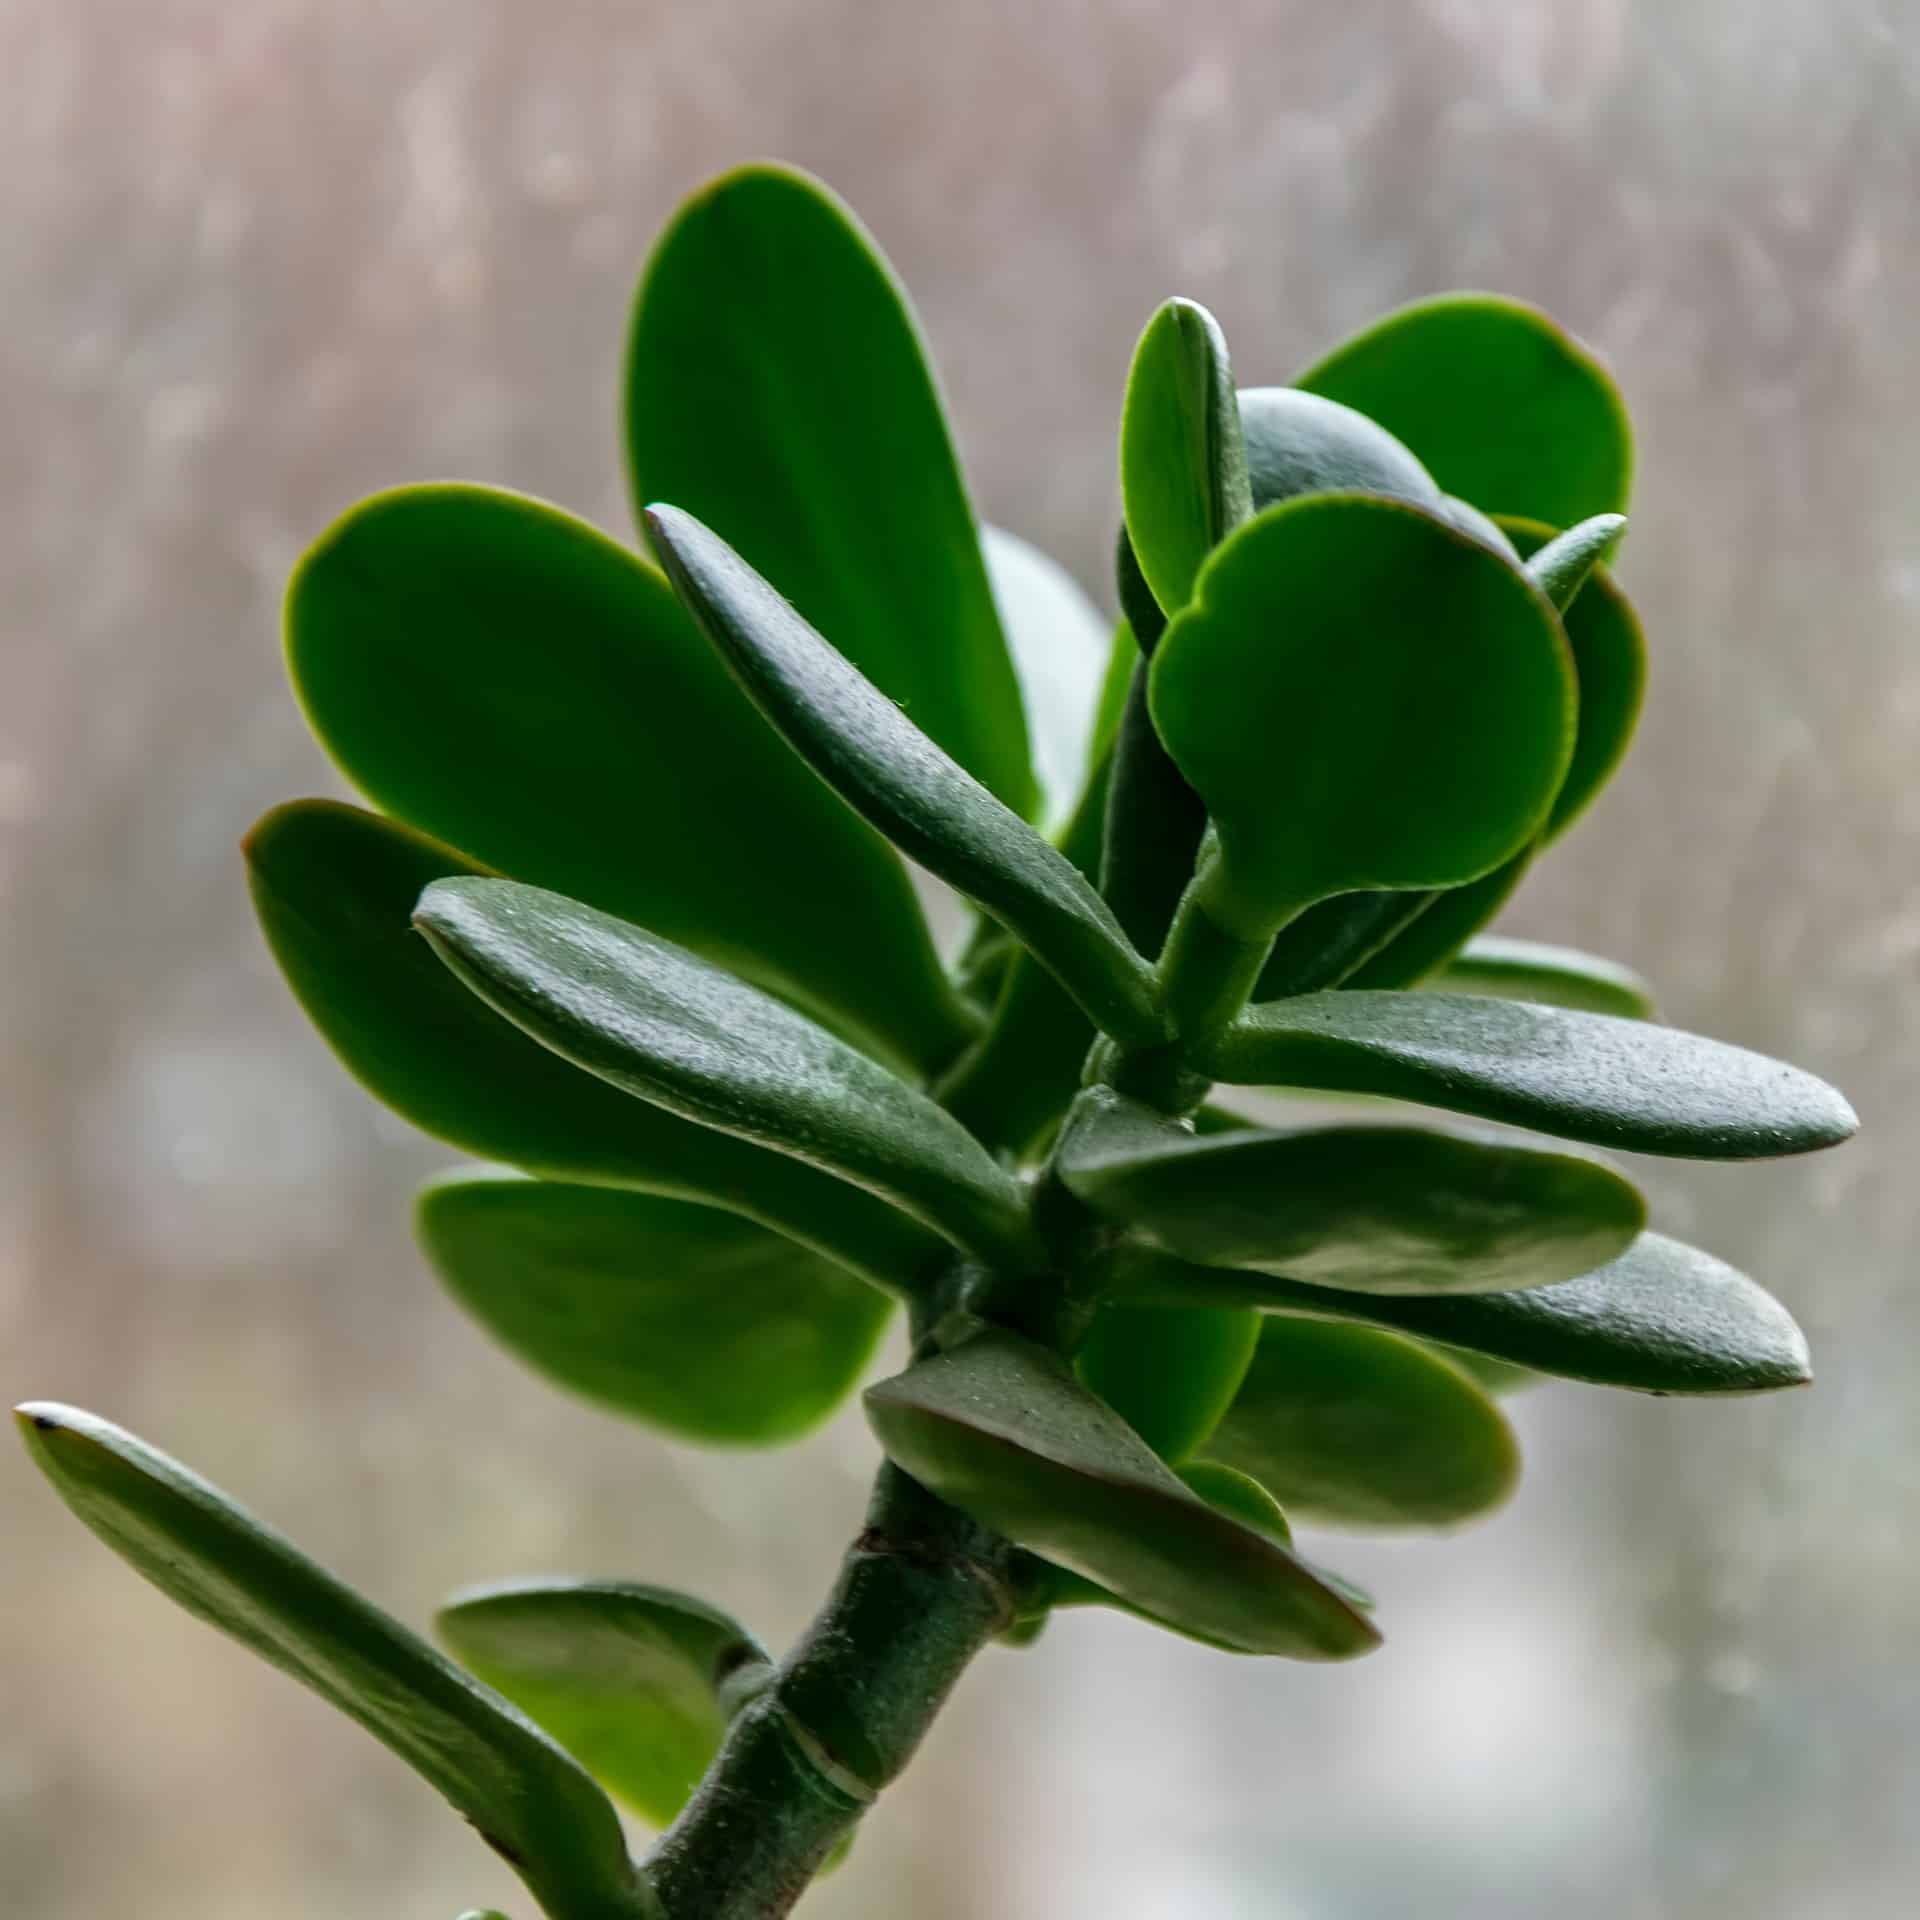 Crassula succulent plant